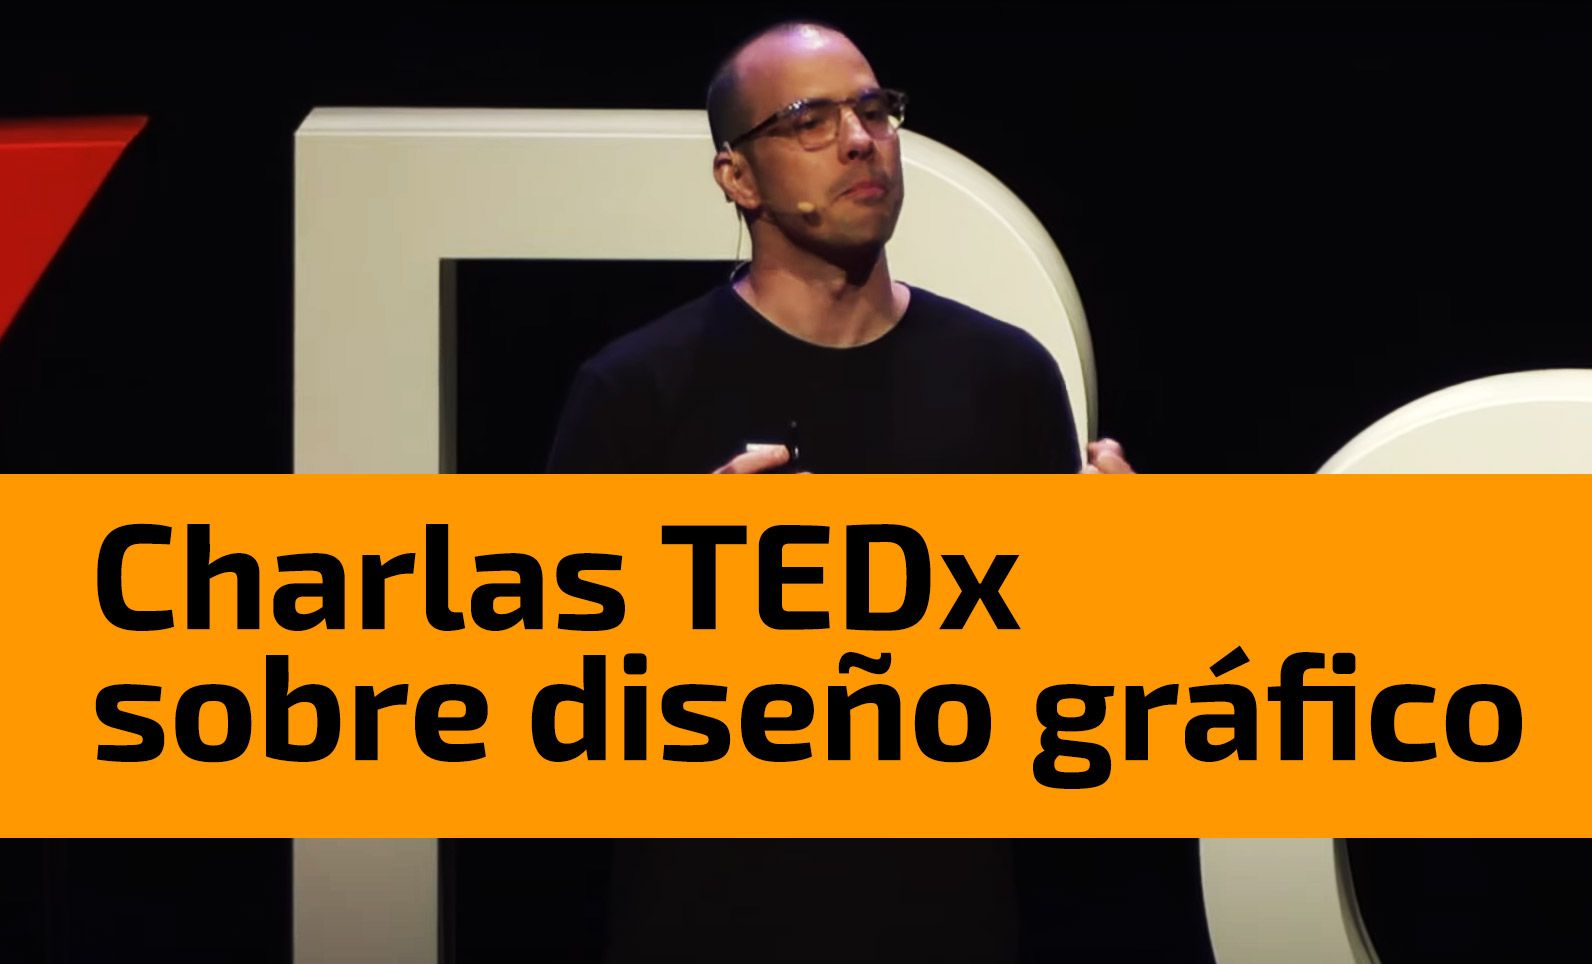 Charlas TEDx diseño gráfico